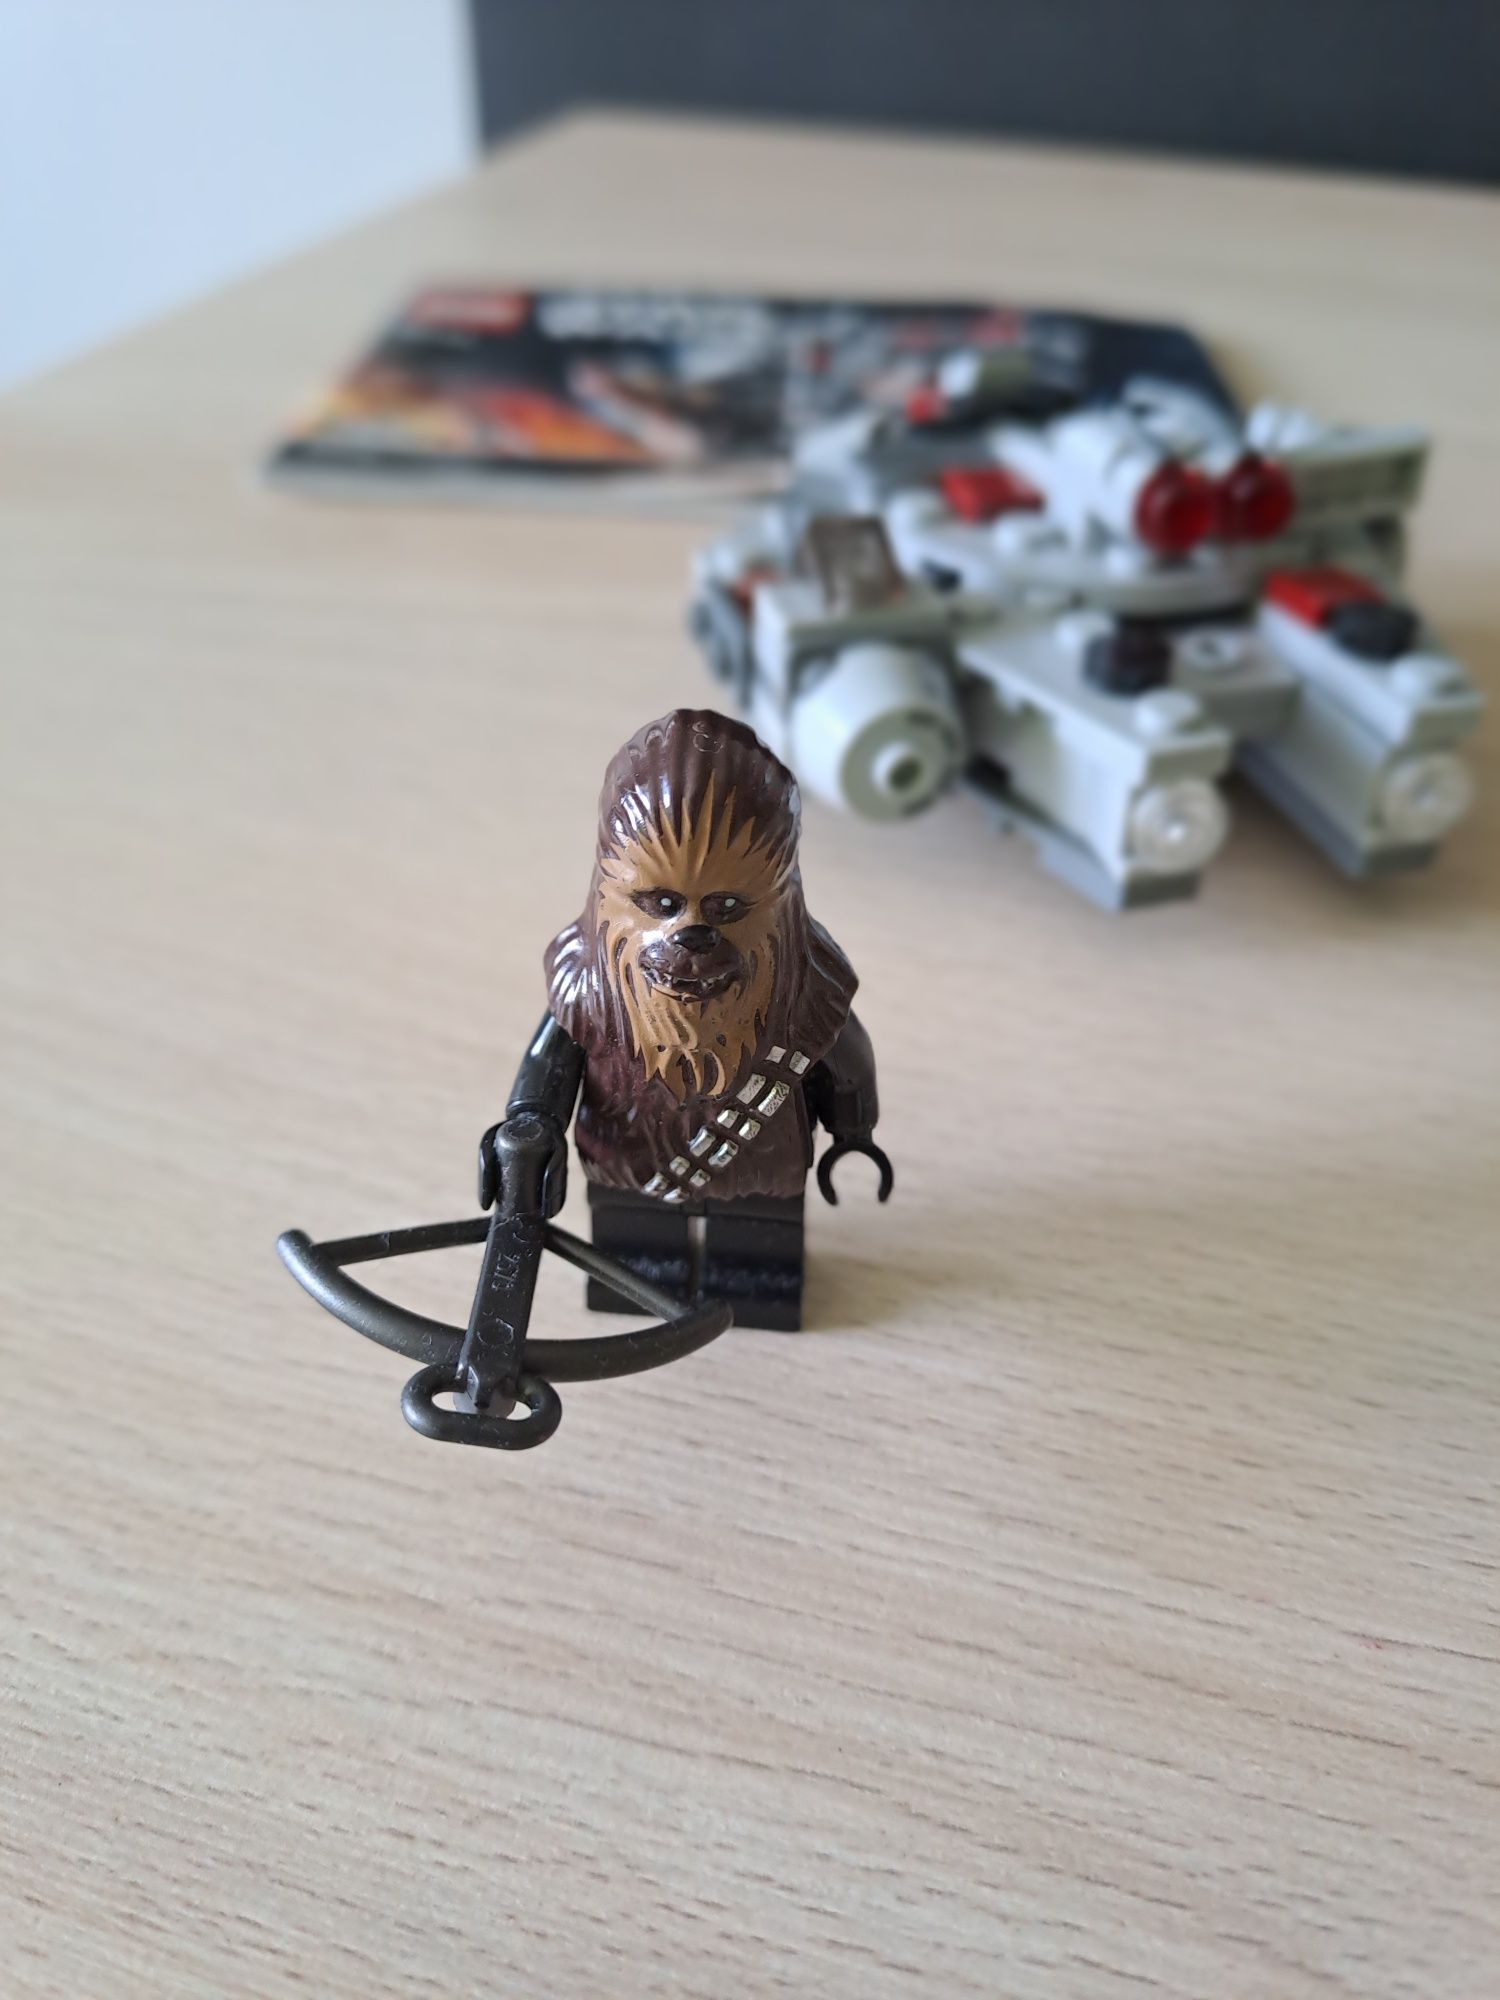 Lego Star Wars 75193